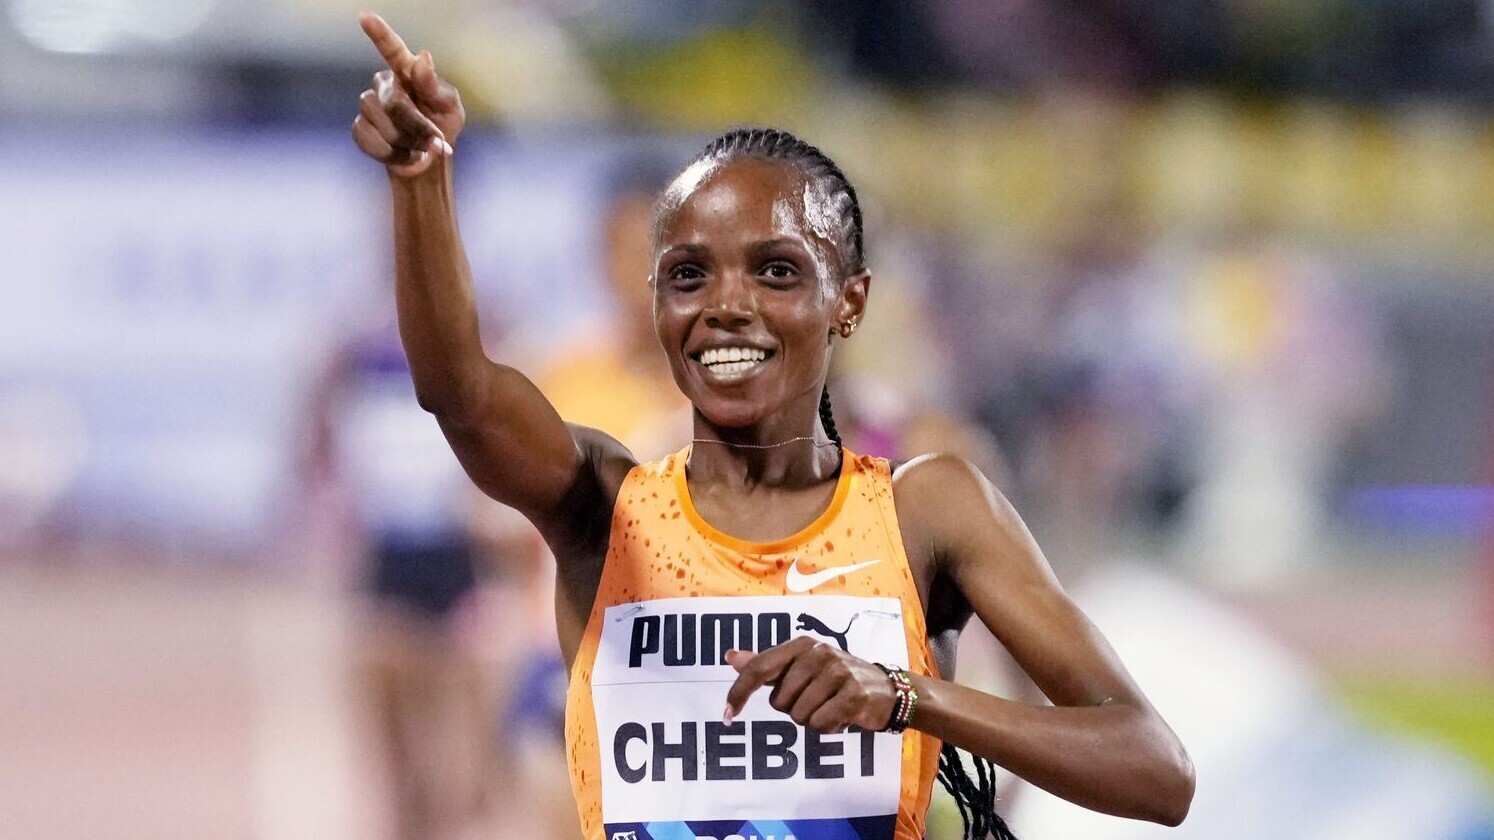 Unter 29 Minuten – Beatrice Chebet läuft Weltrekord